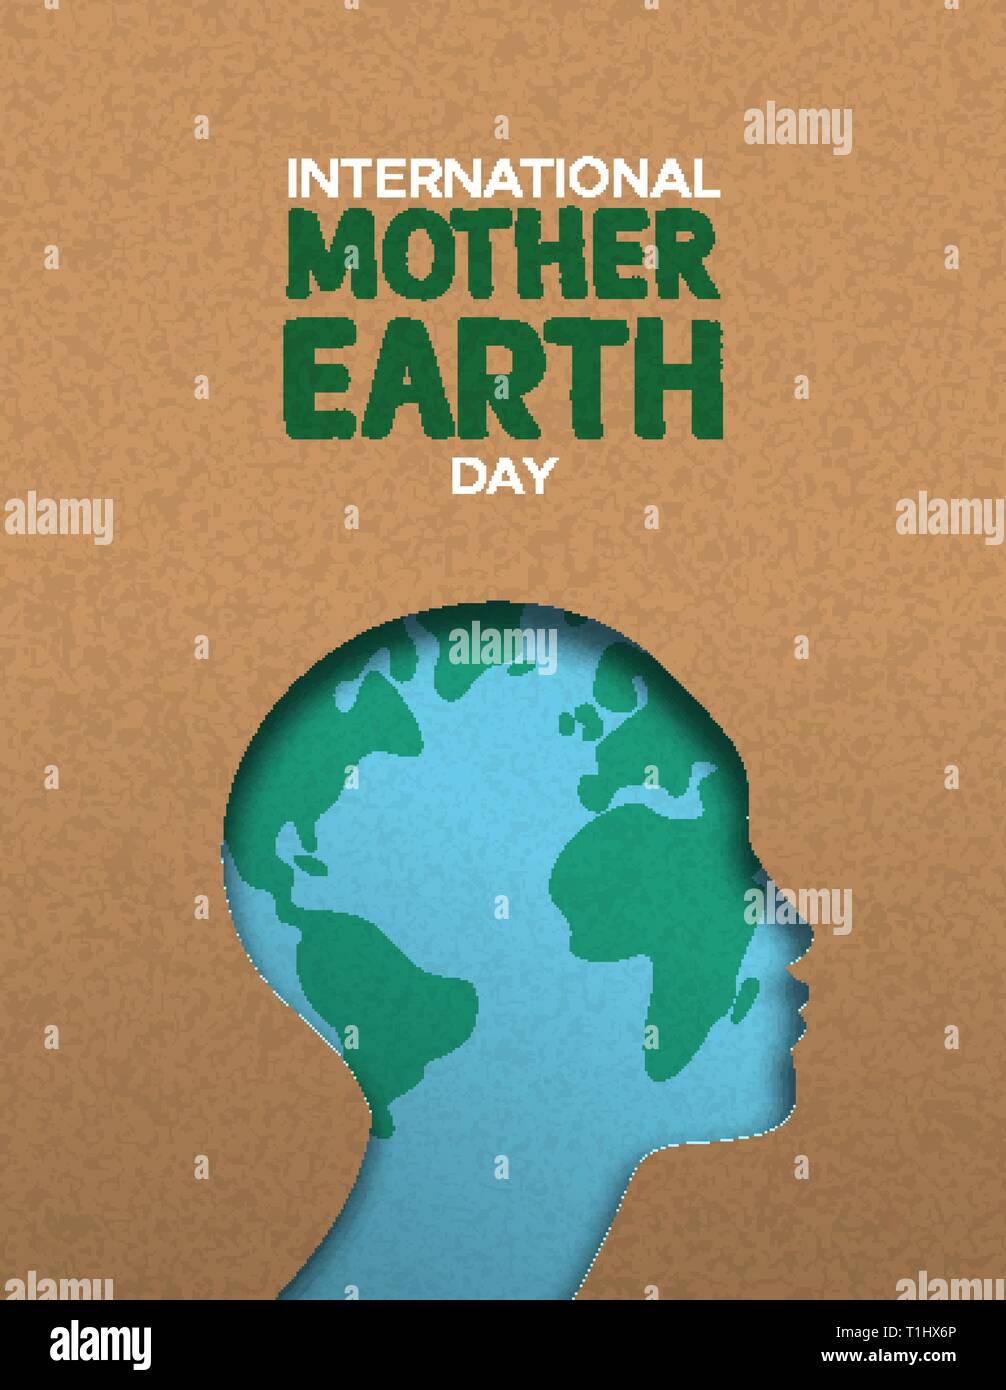 La Journée internationale de la Terre nourricière poster illustration de papercut femme chef avec carte du monde à l'intérieur. Papier recyclé pour la conservation de l'environnement aw Illustration de Vecteur